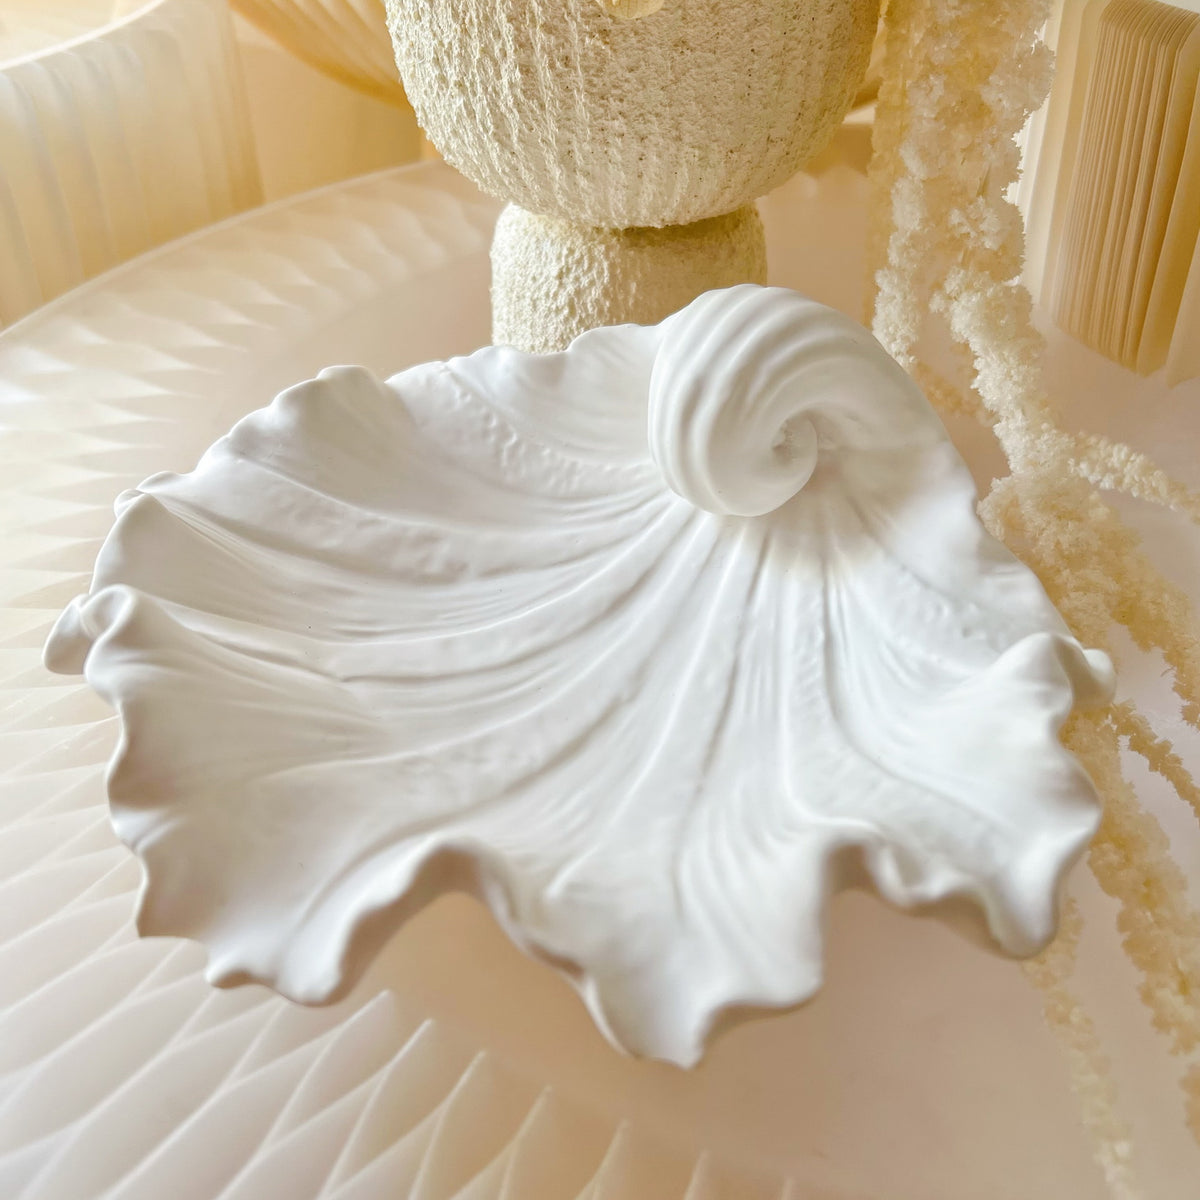 Handmade Seashell Decorative Tray